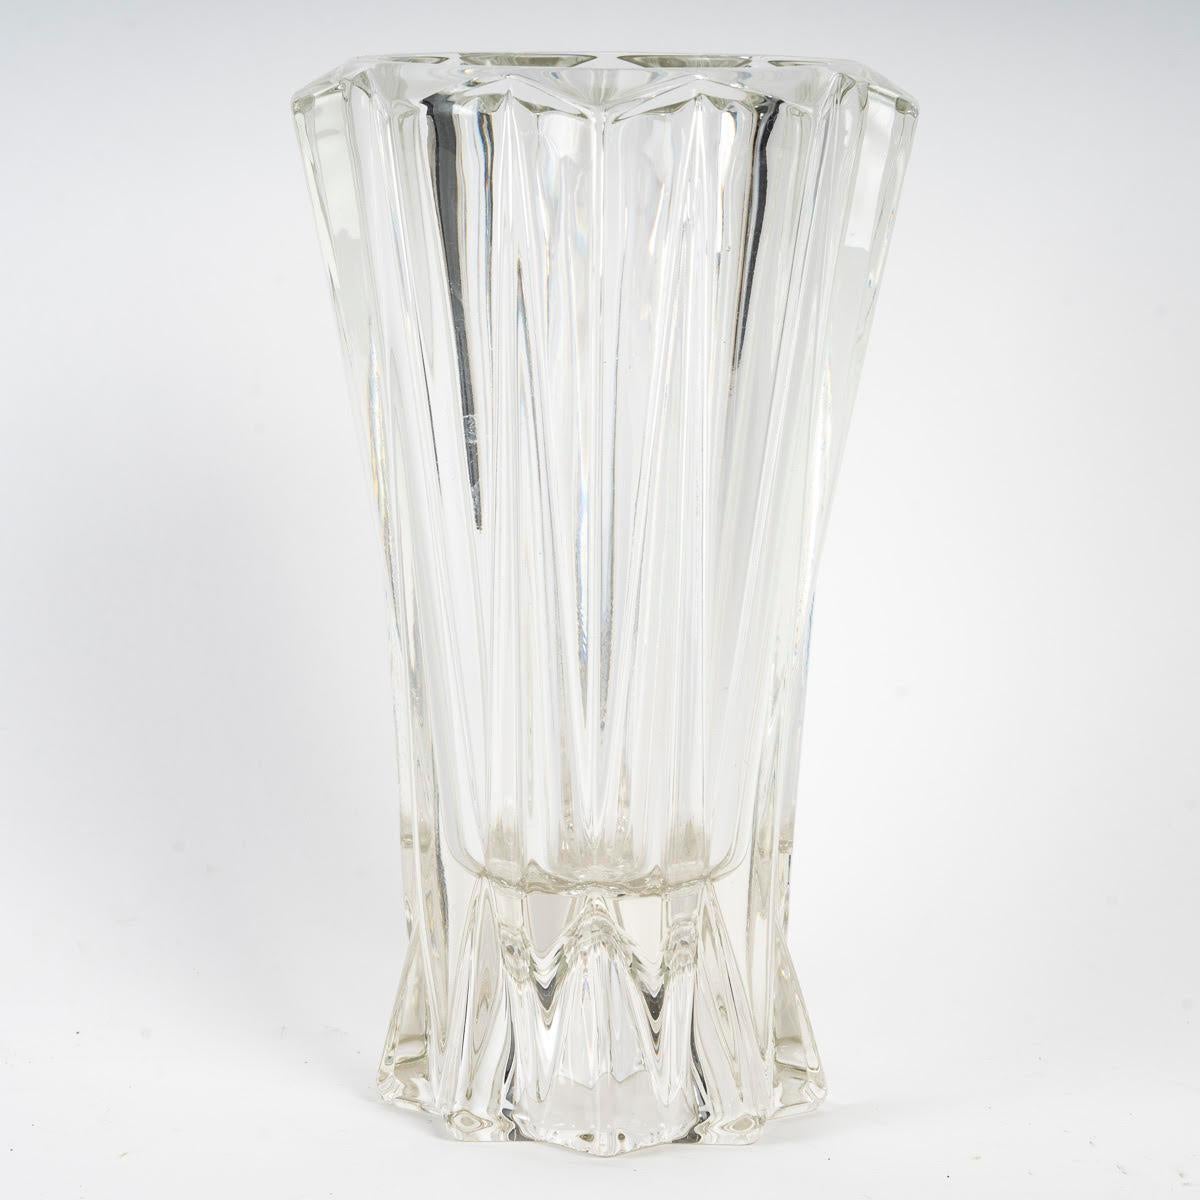 1950's moulded glass vase.

1950s moulded glass vase.
h: 22cm, d: 13cm